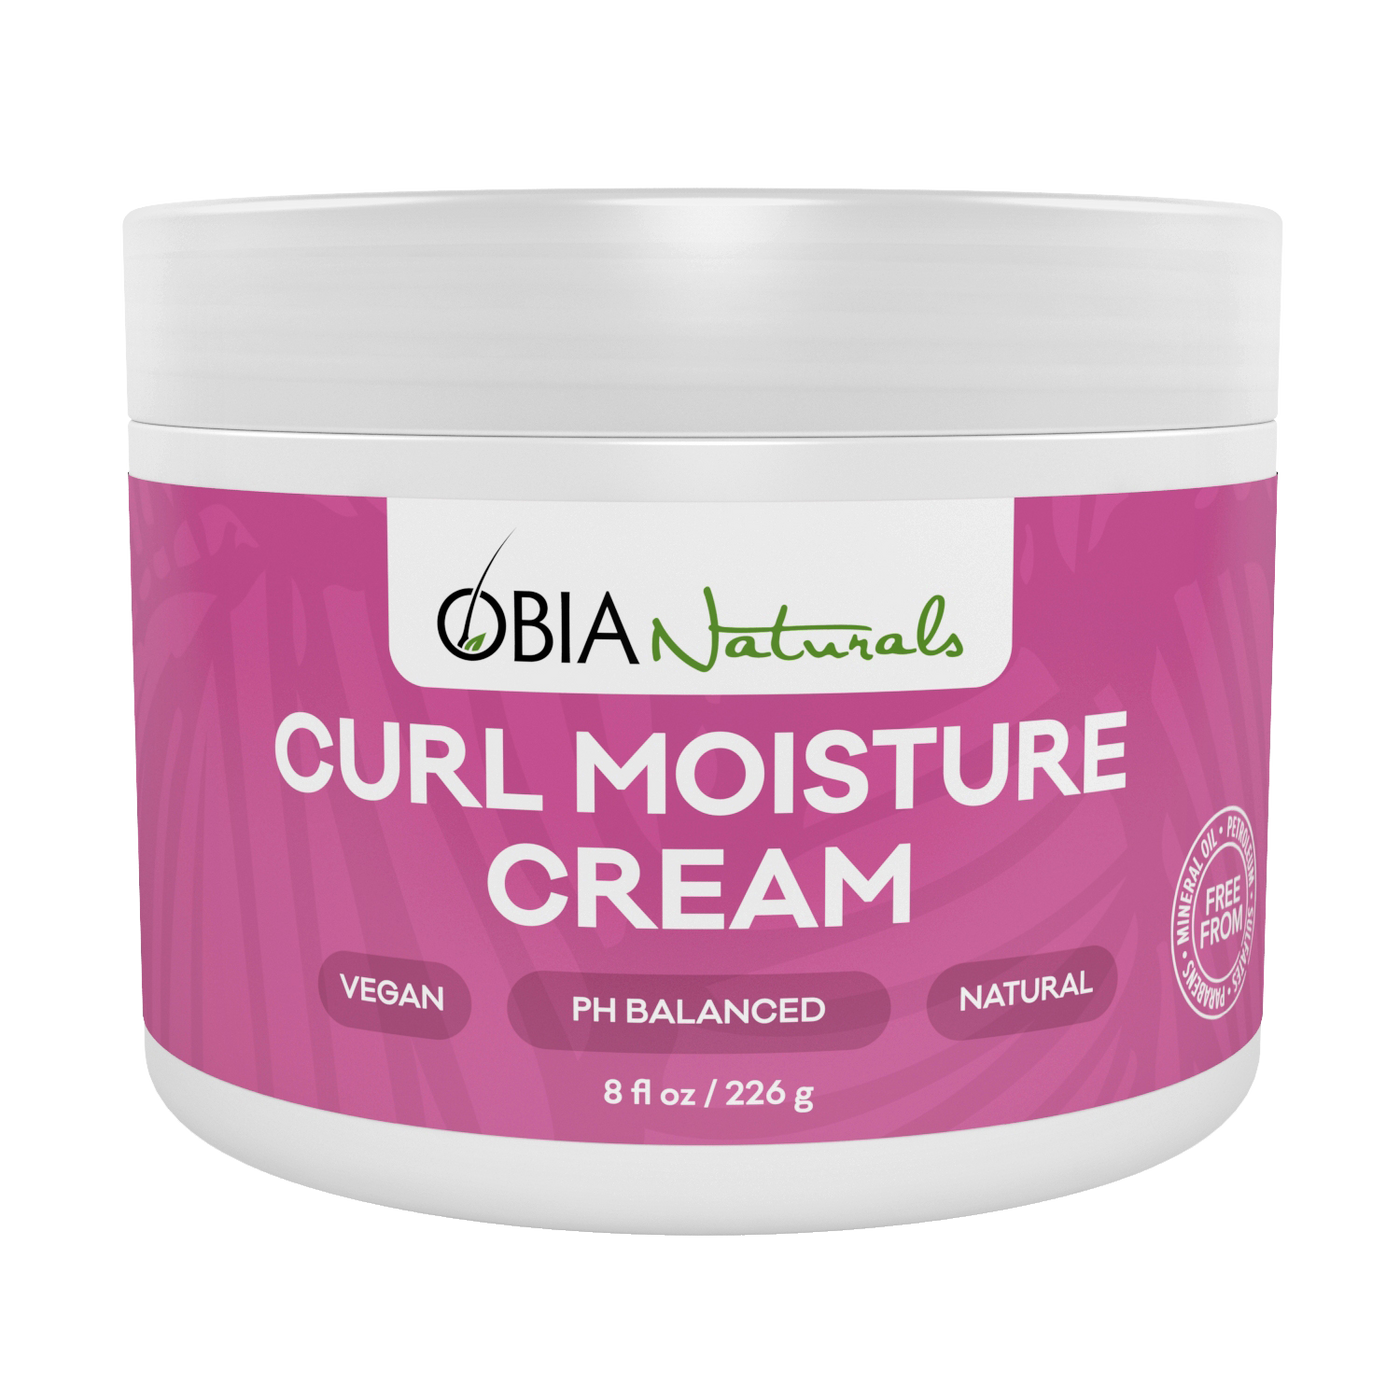 Curl Moisture Cream - OBIA Naturals - 1